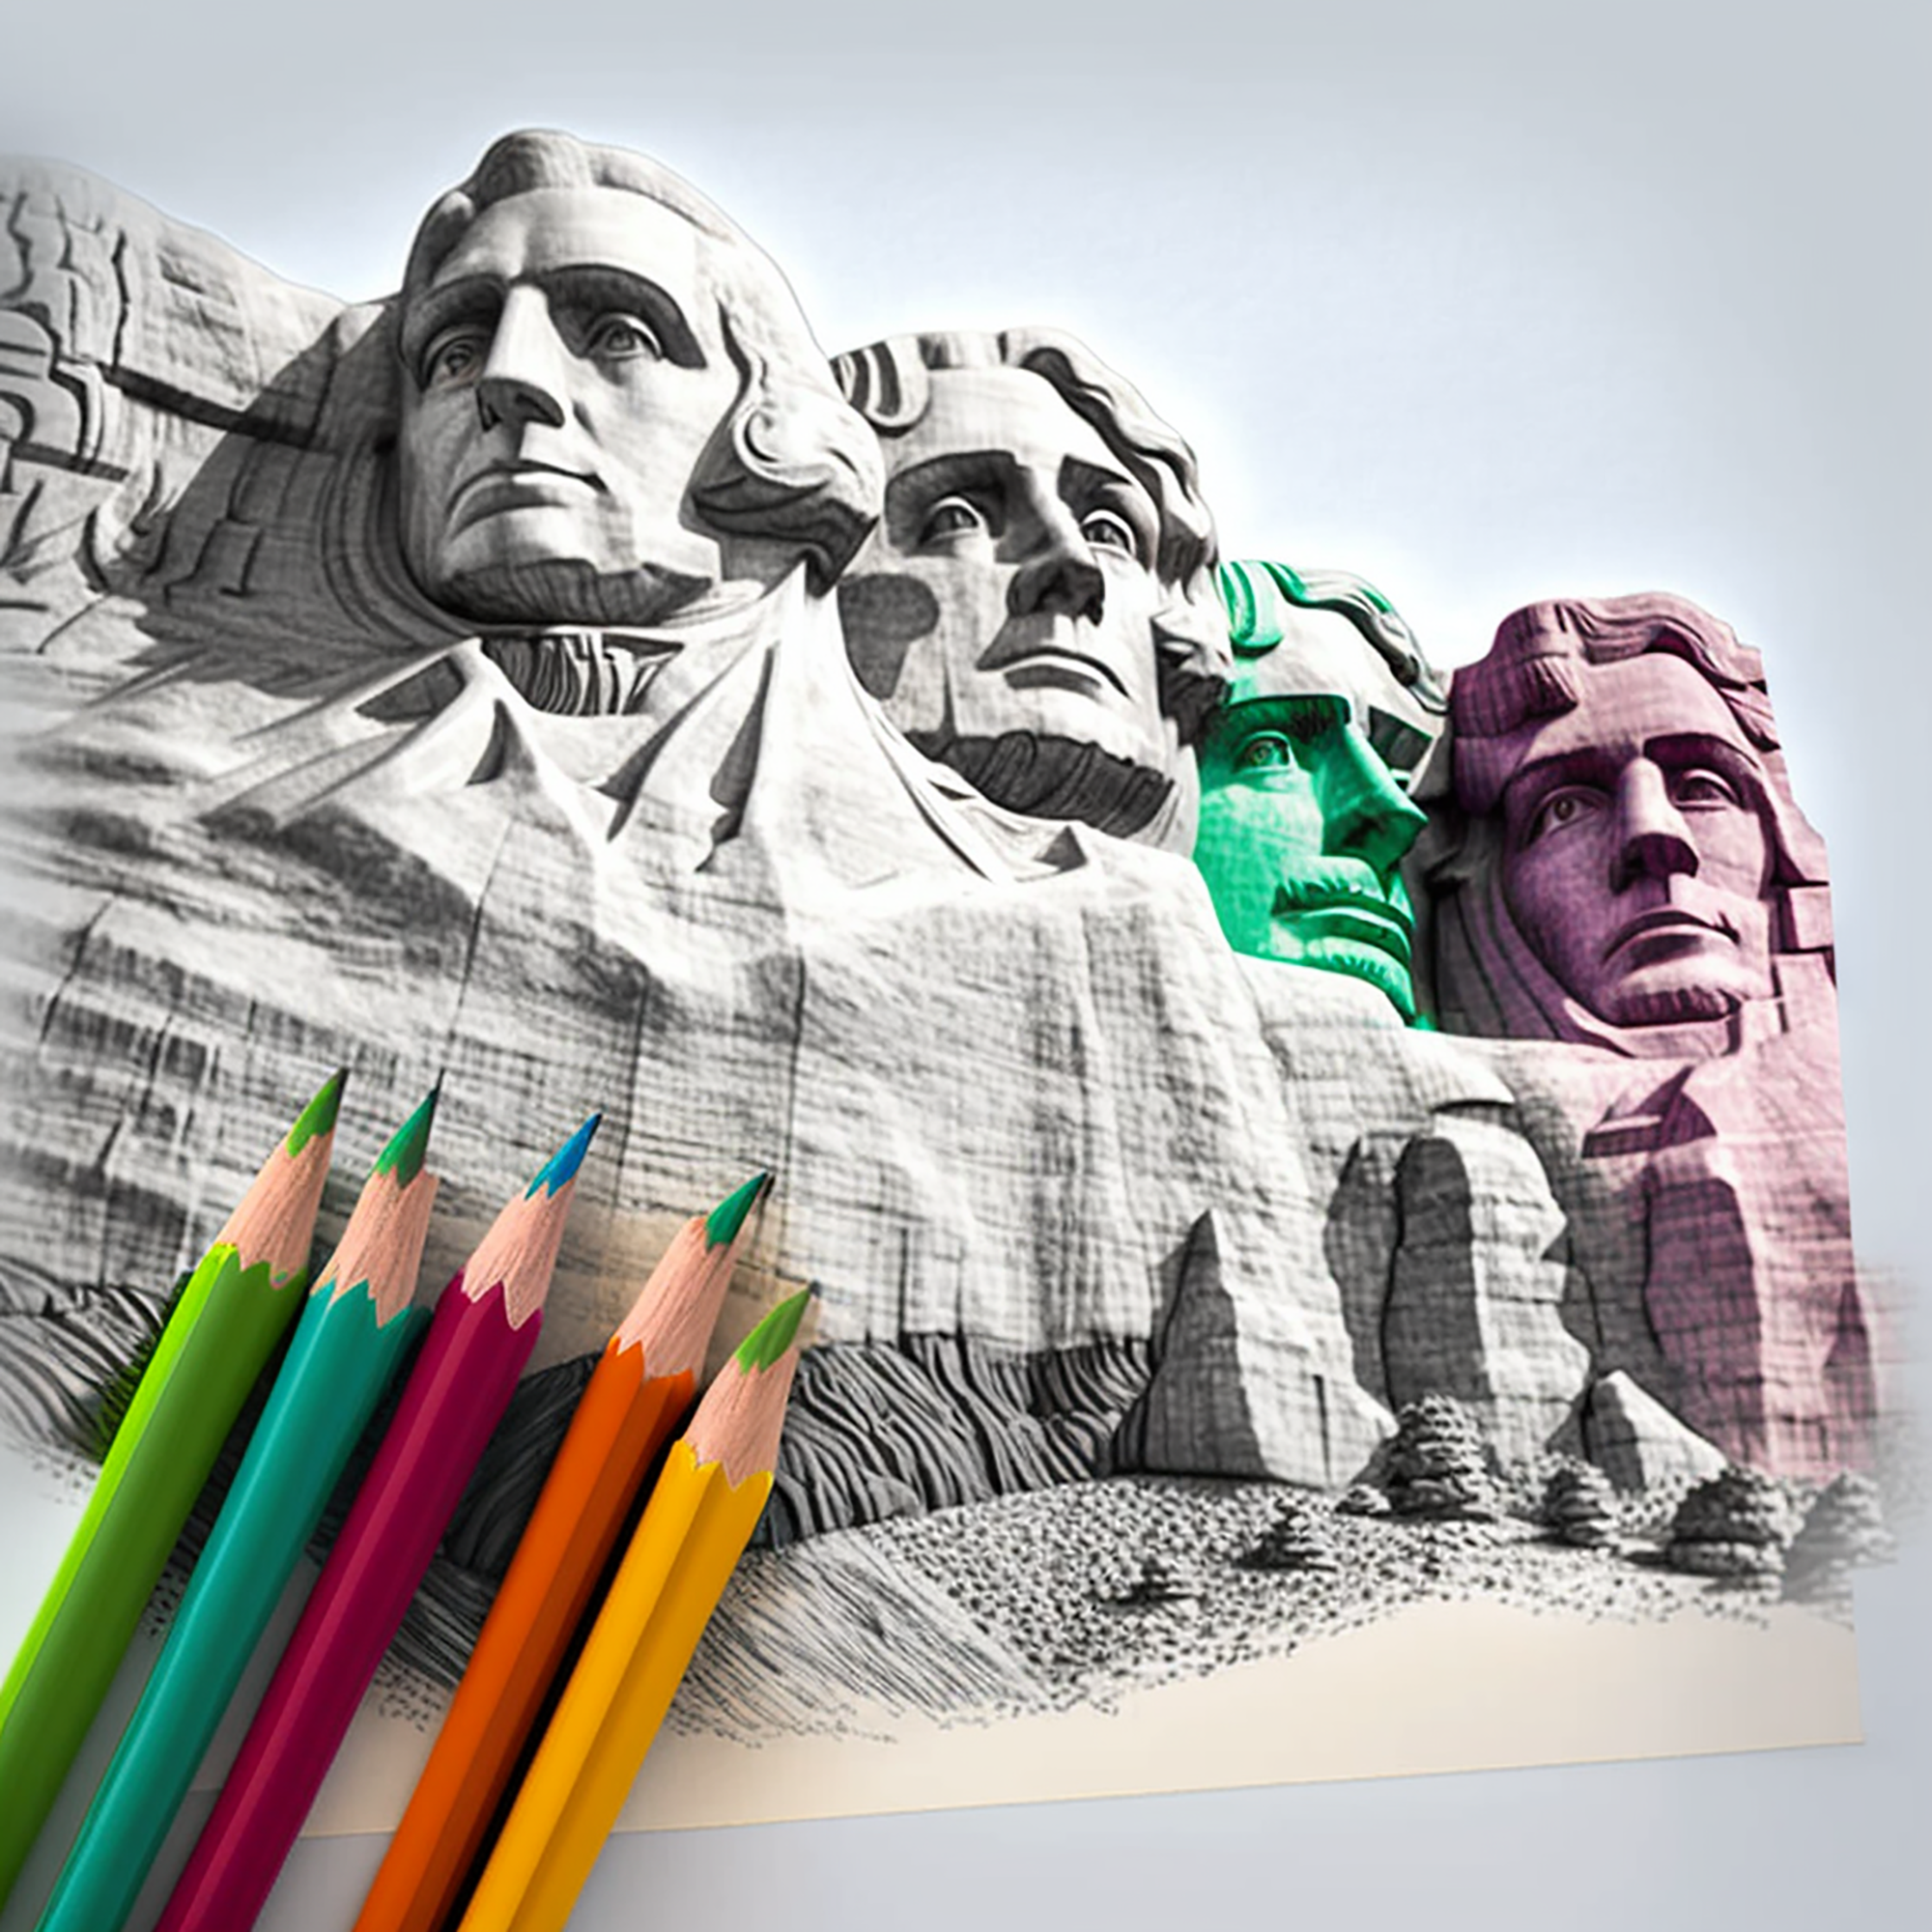 2601-Mount Rushmore in South Dakota, coloring book